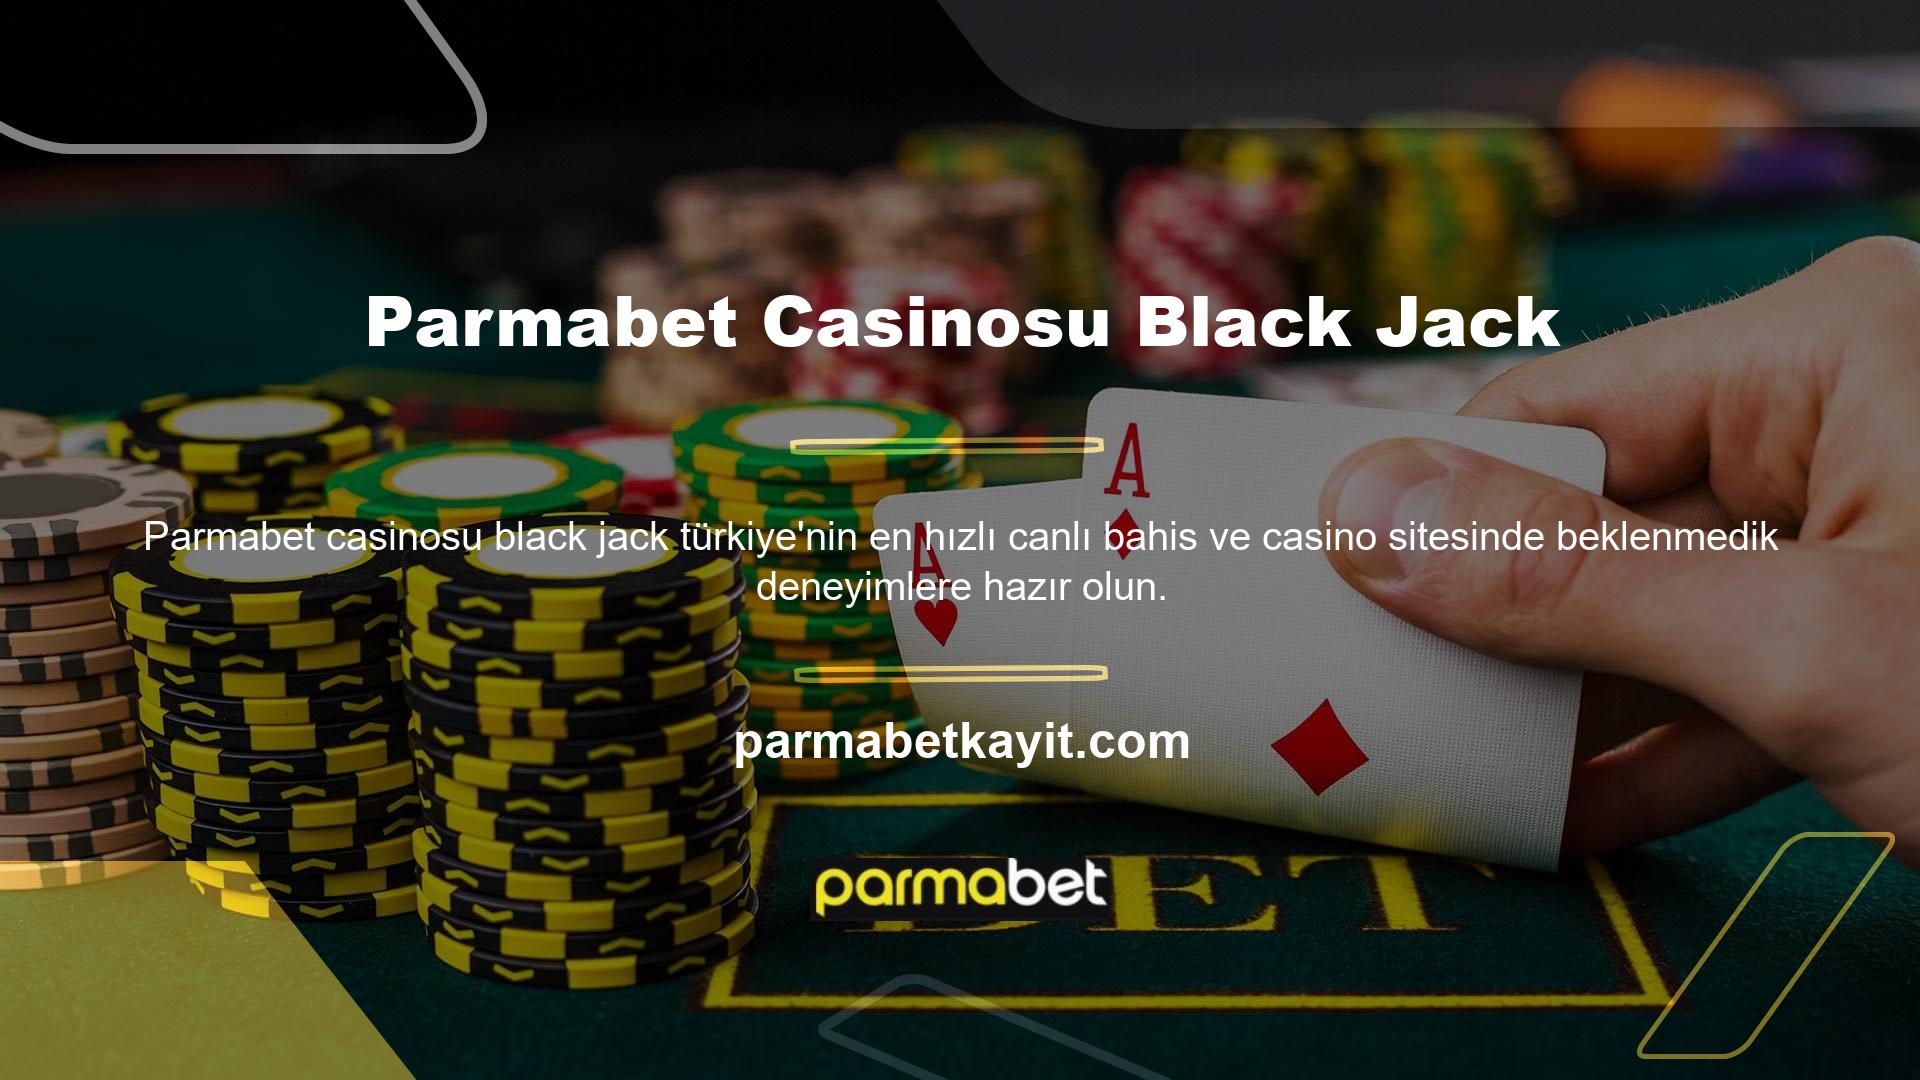 Canlı casino lobisinde Parmabet casino Black Jack'ine Türk krupiyeler eşlik ediyor ve bu da oyunu bir adım öteye taşıyor